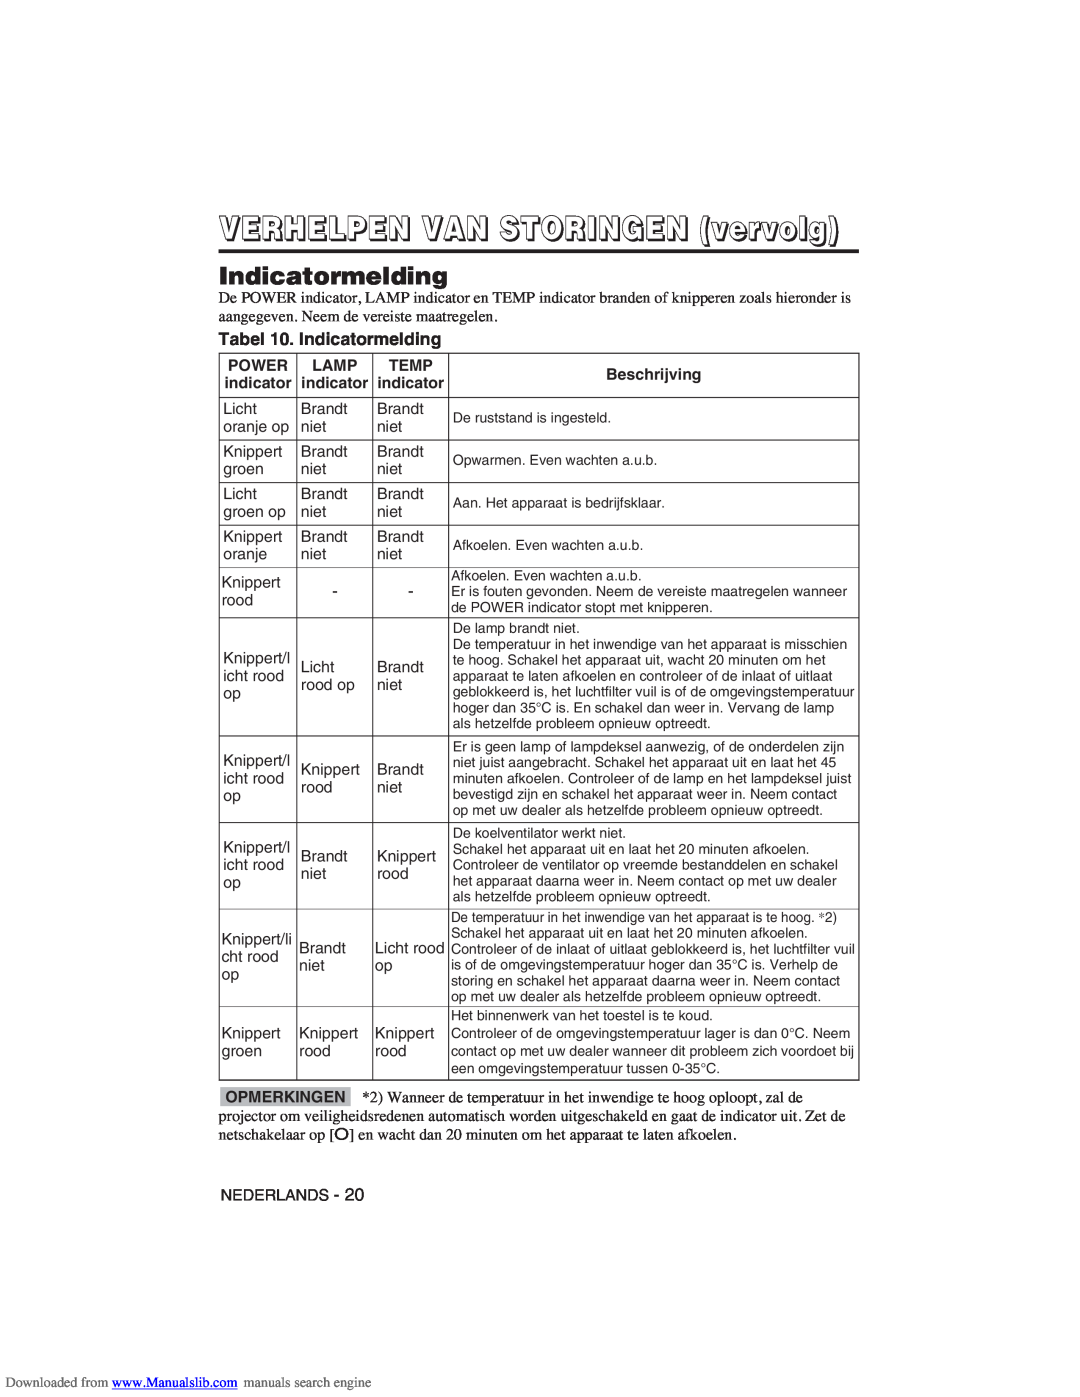 Hitachi CP-X275W user manual VERHELPEN VAN STORINGEN vervolg, Tabel 10. Indicatormelding 